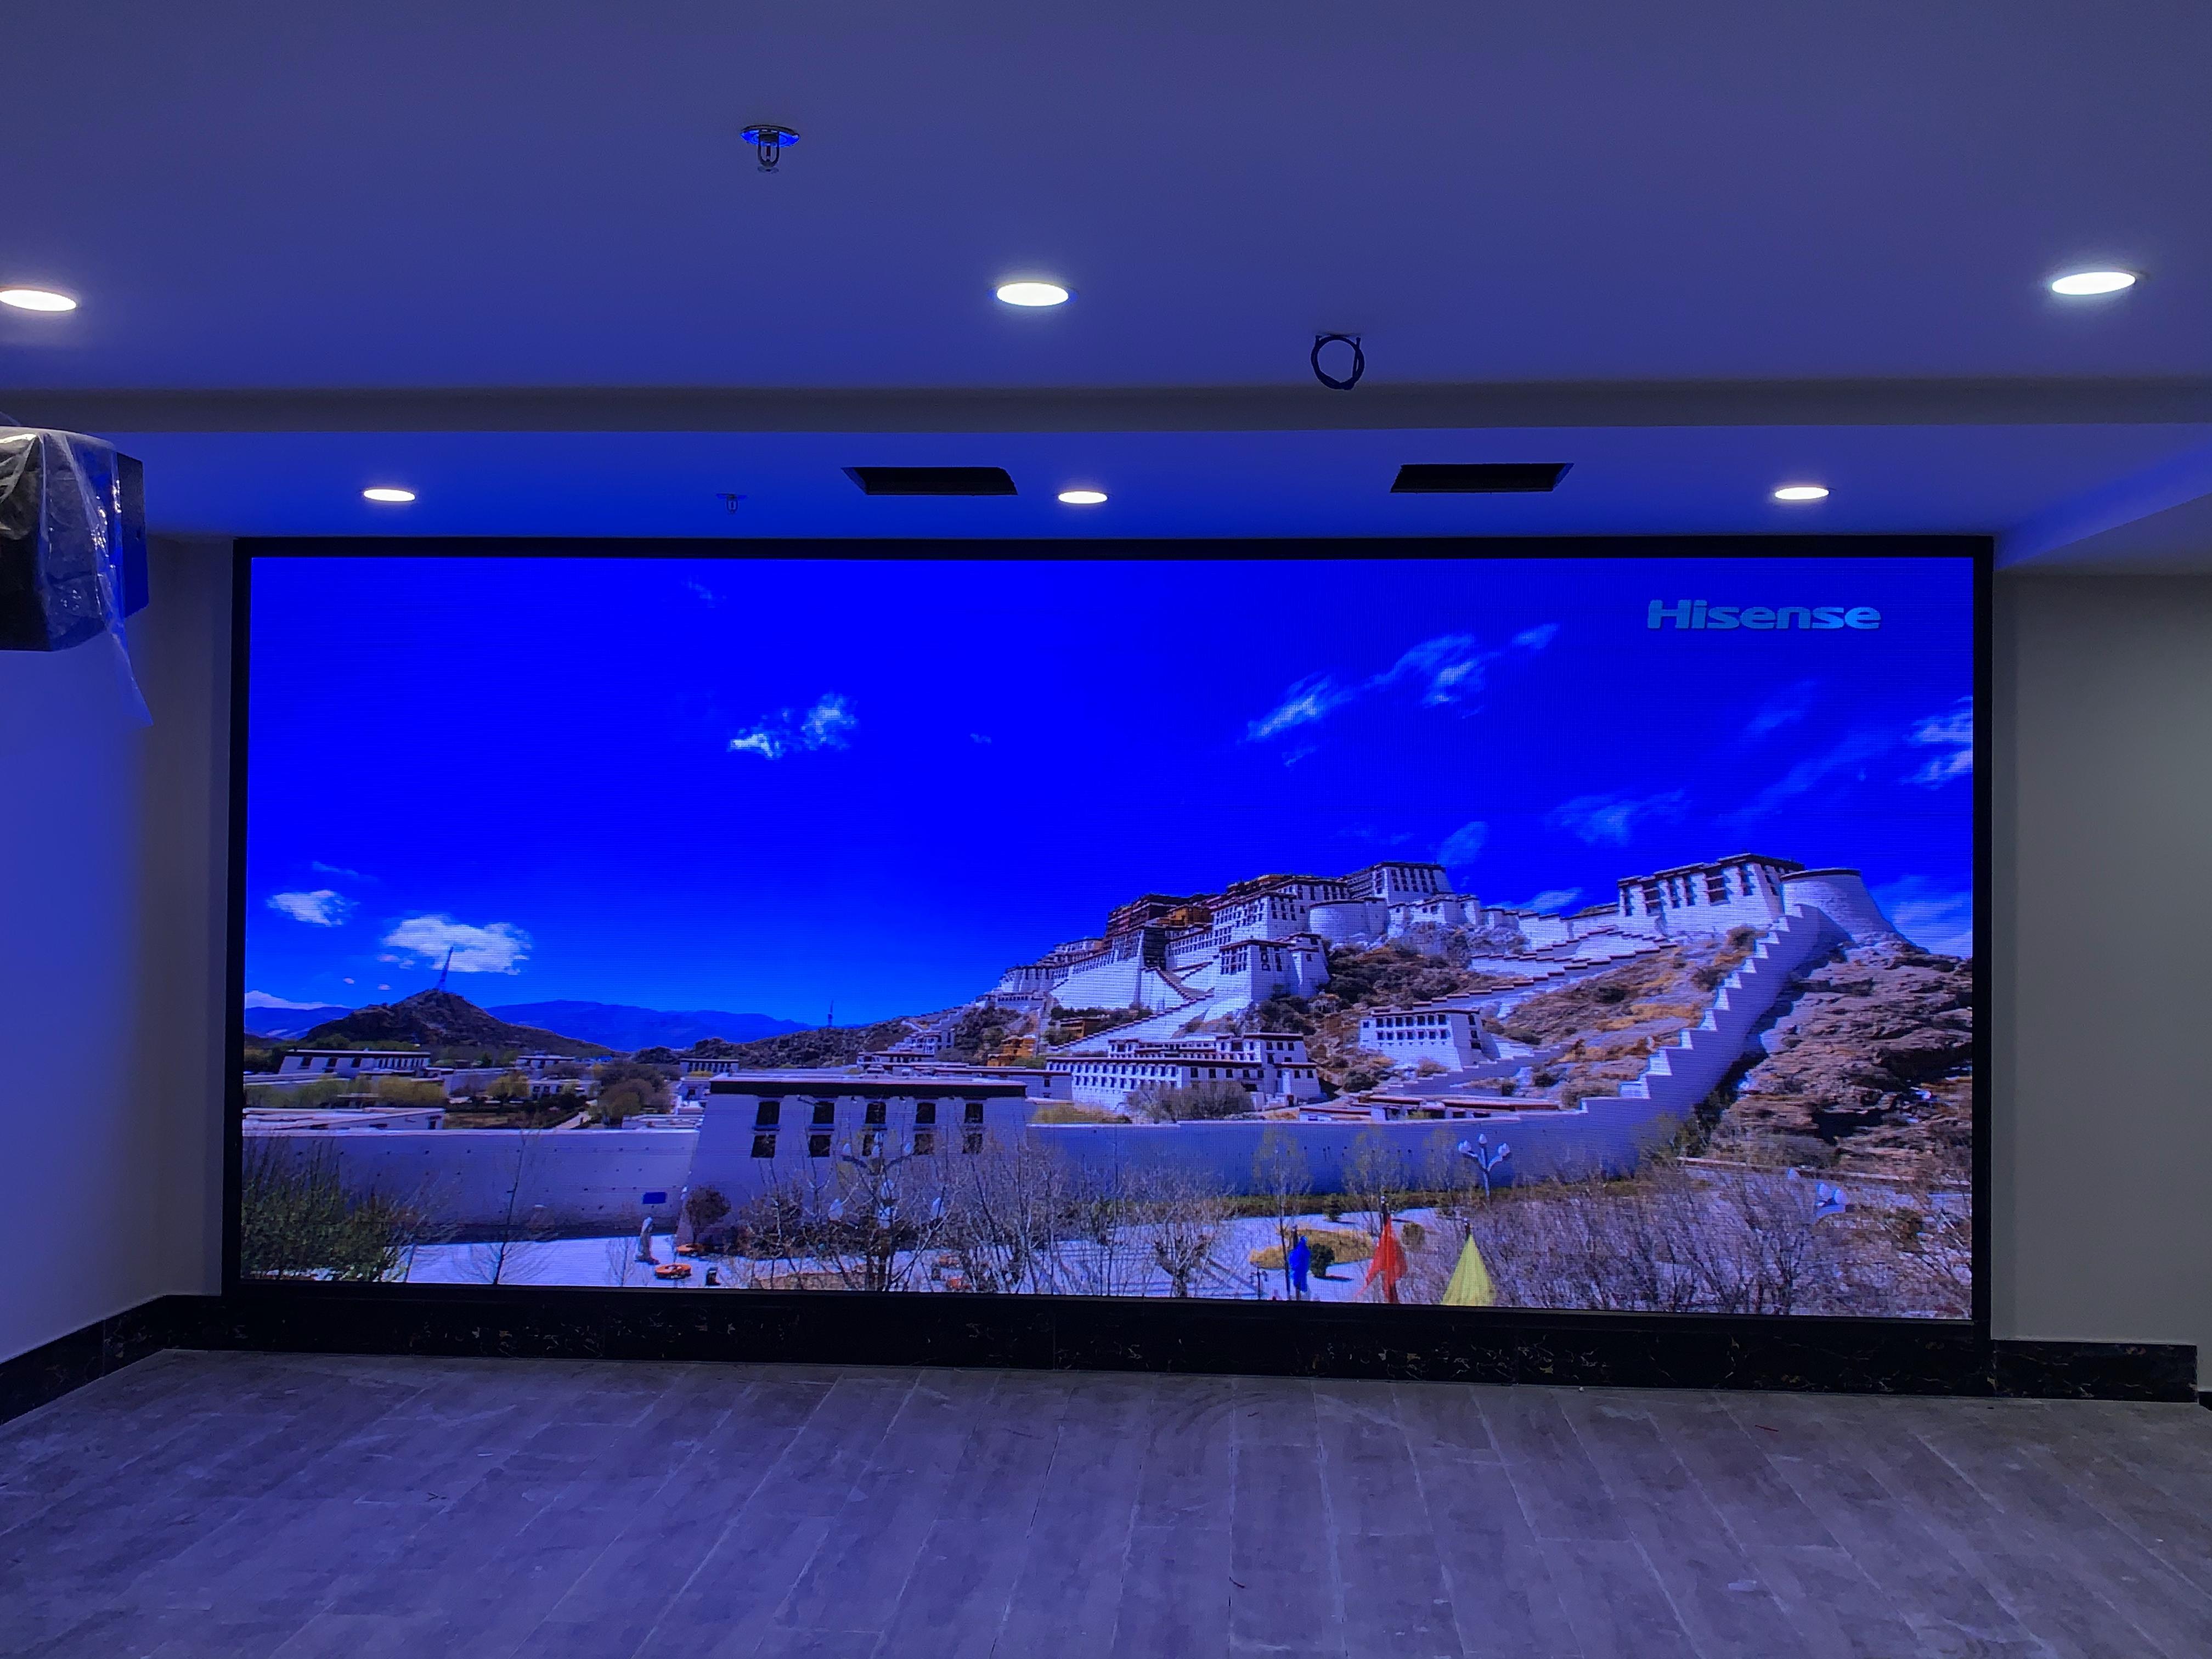 北京丰台-LEDP2.5显示屏壁挂支架安装项目